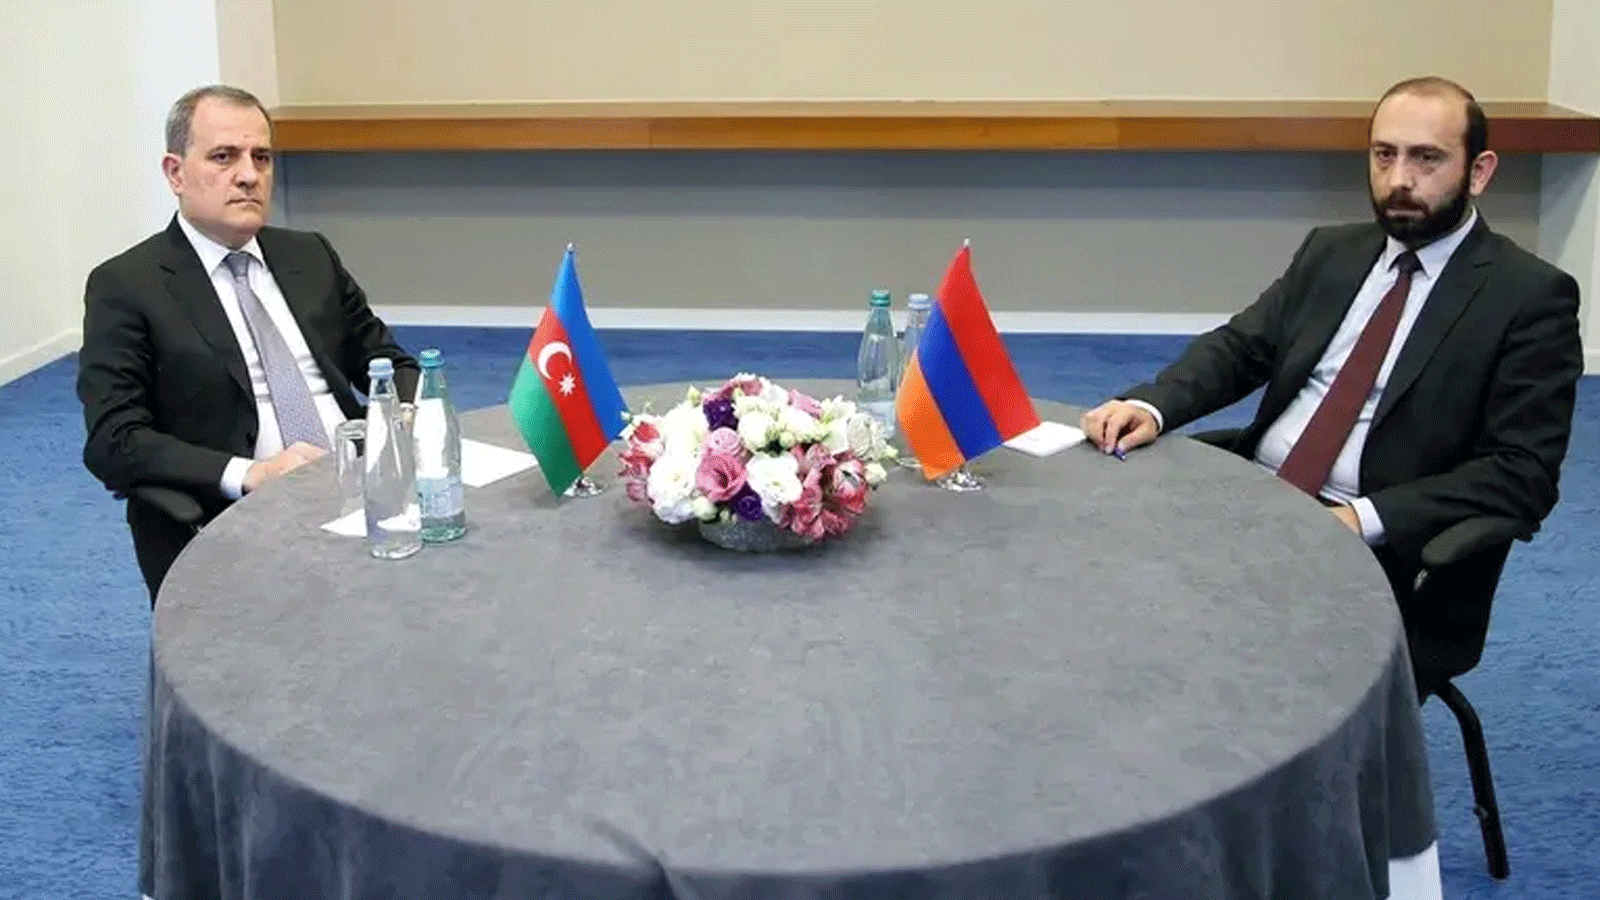 صورة التقطتها وزارة الخارجية الجورجية ونشرتها في 16 تموز\ يوليو 2022، وزير خارجية أذربيجان جيهون بيراموف (إلى اليسار) ووزير الخارجية الأرميني أرارات ميرزويان خلال اجتماع في تبليسي، جورجيا. 